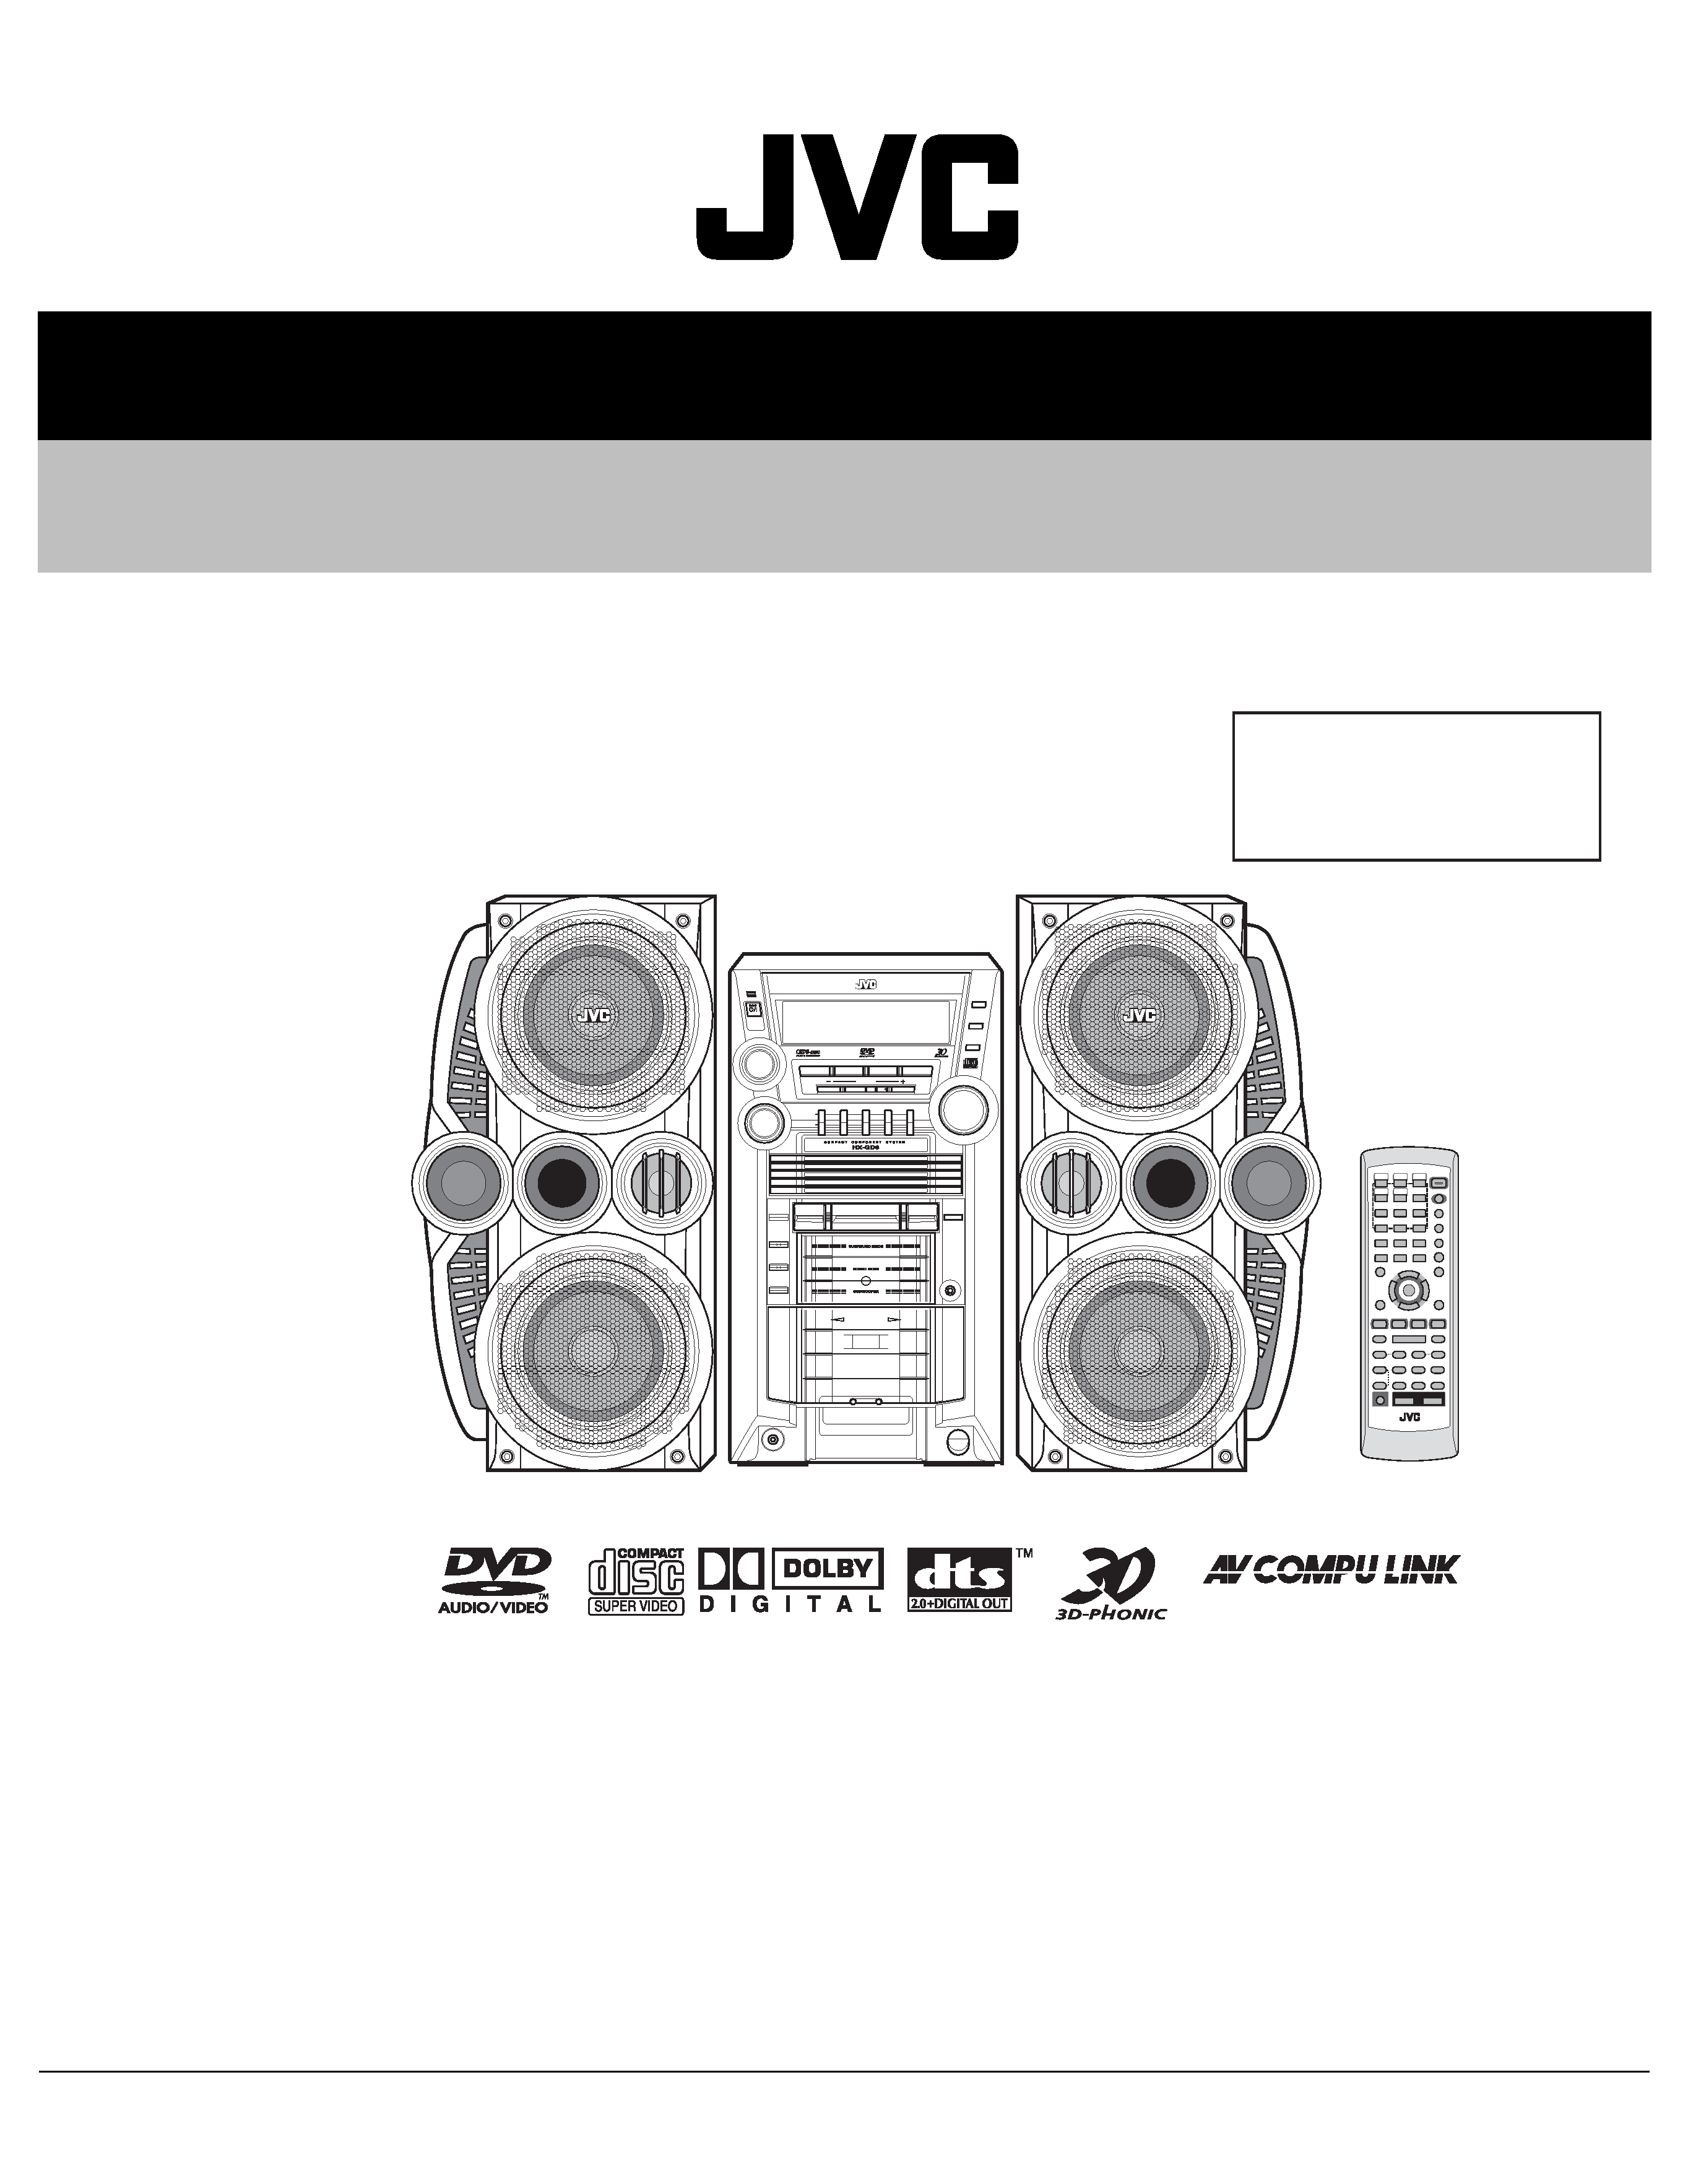 jvc cassette deck service manual